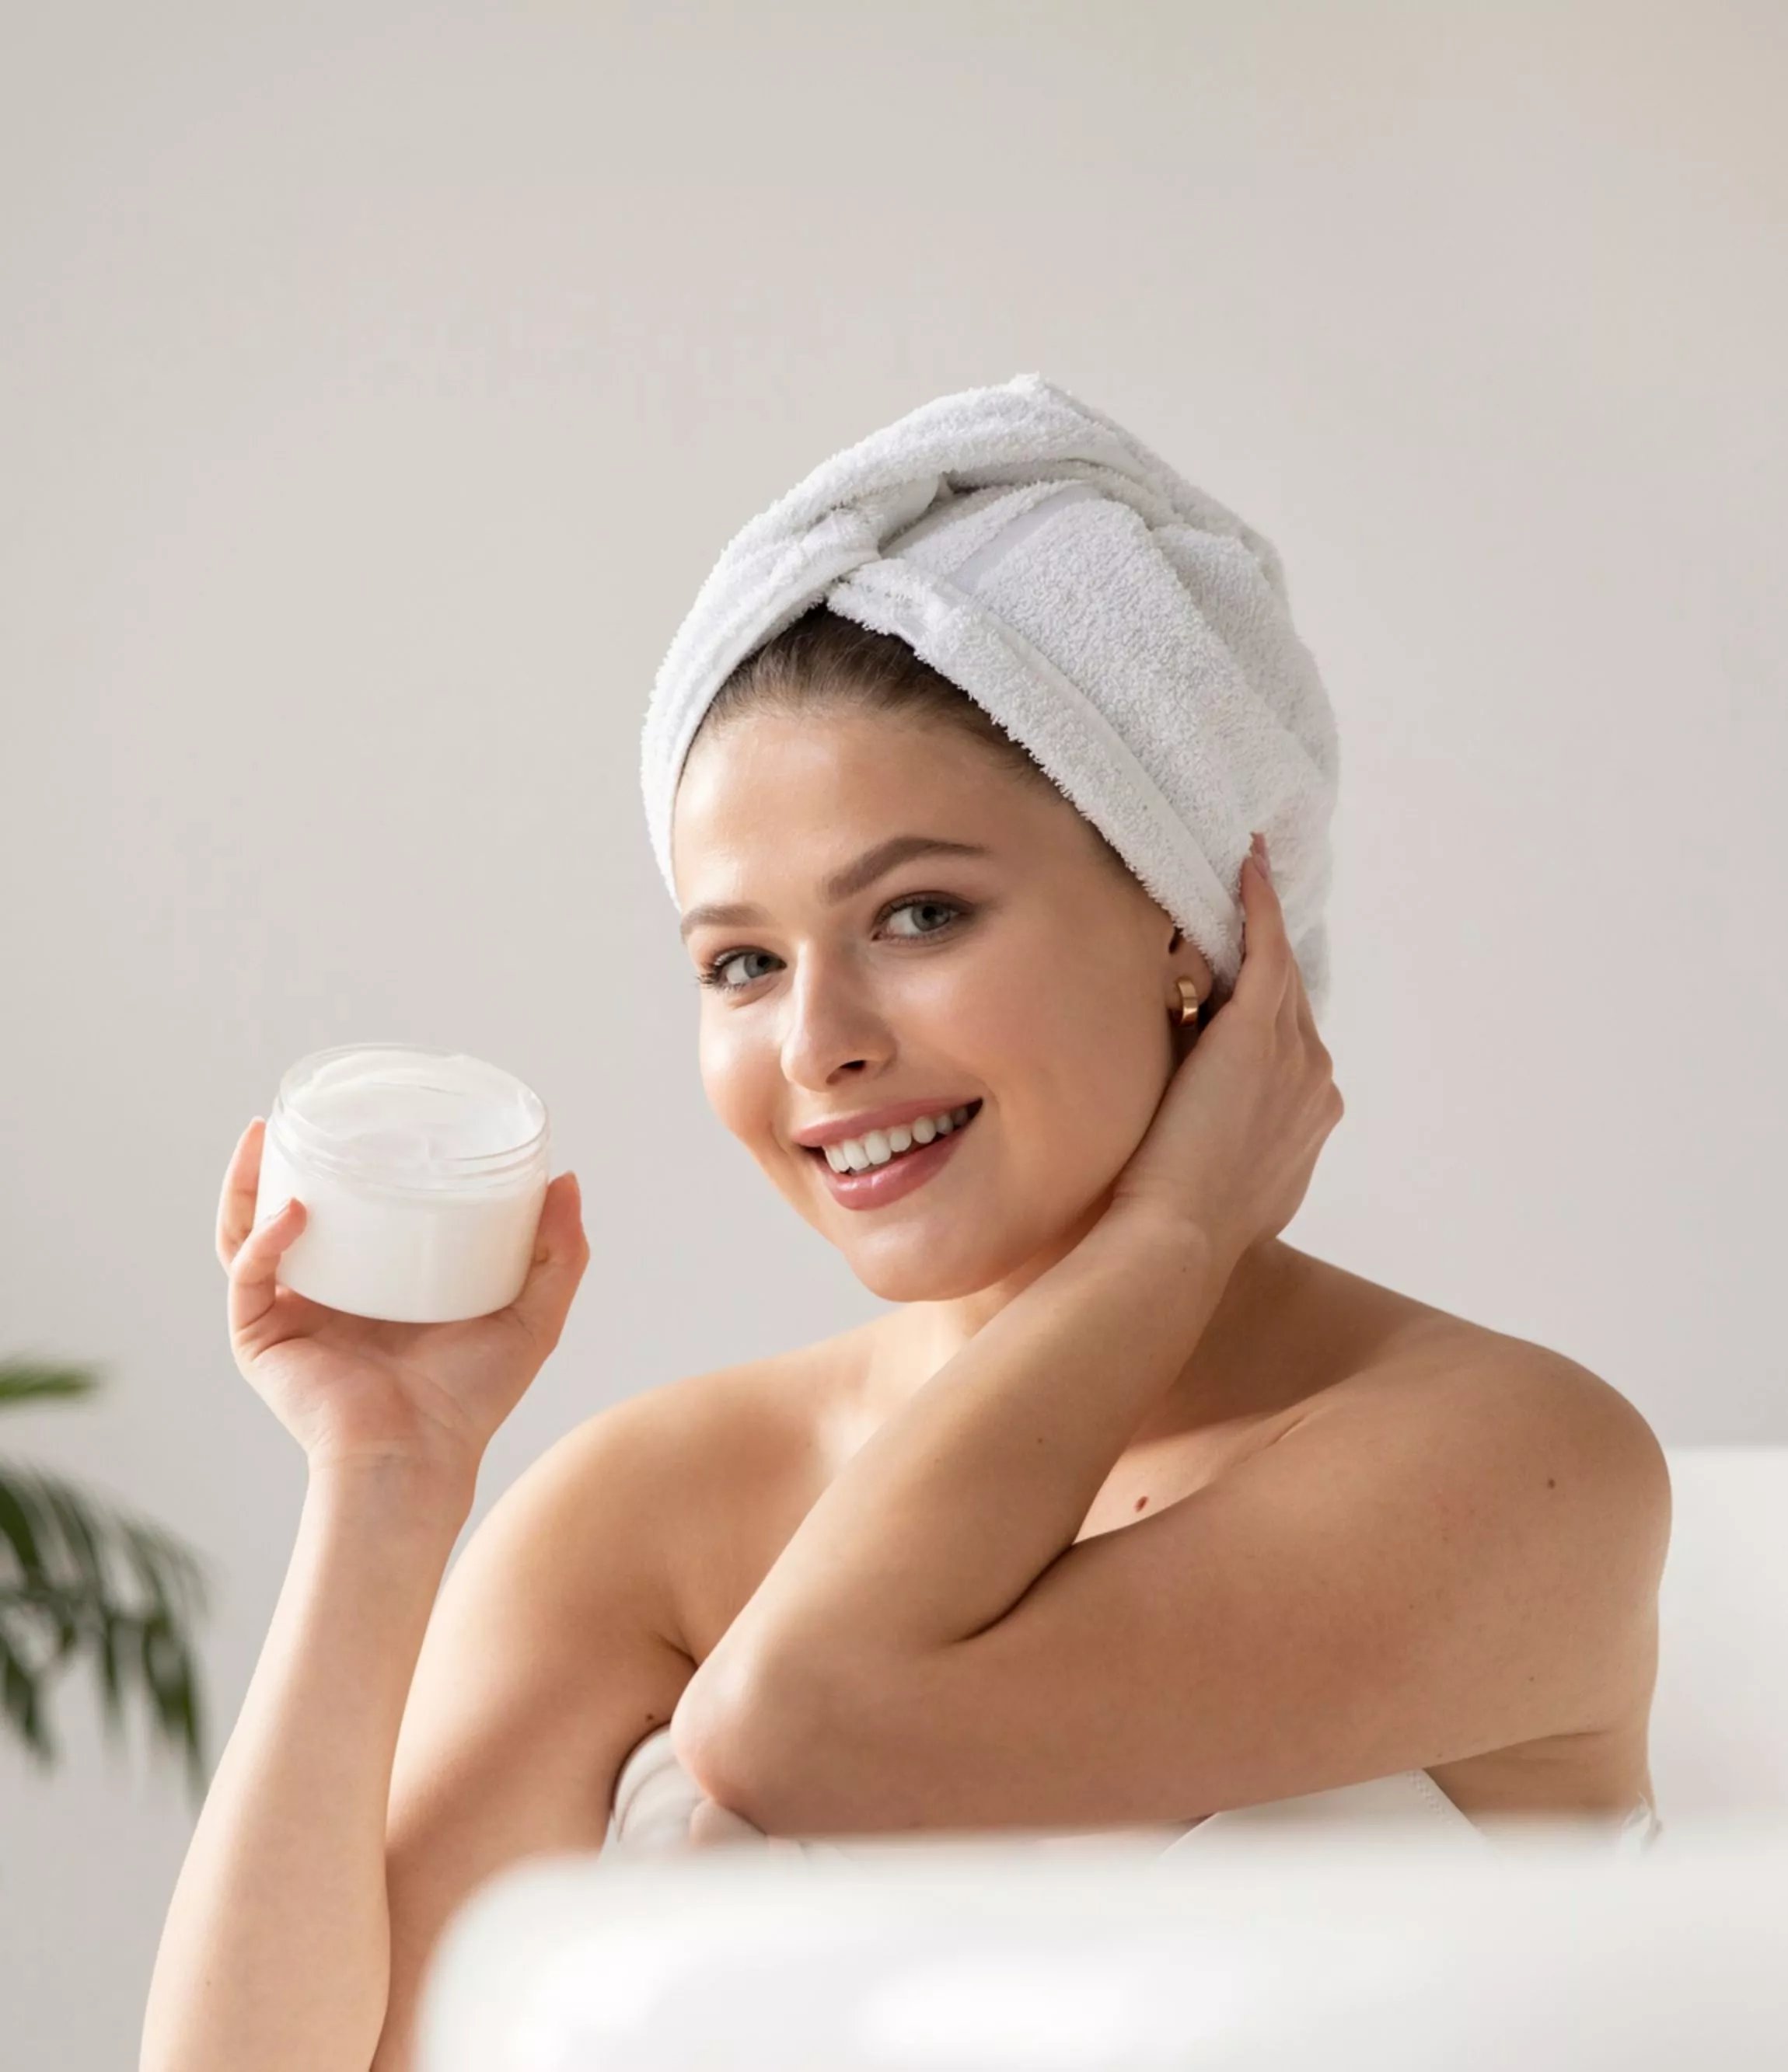 девушка в ванной с полотенцем на голове и баночкой крема в руках